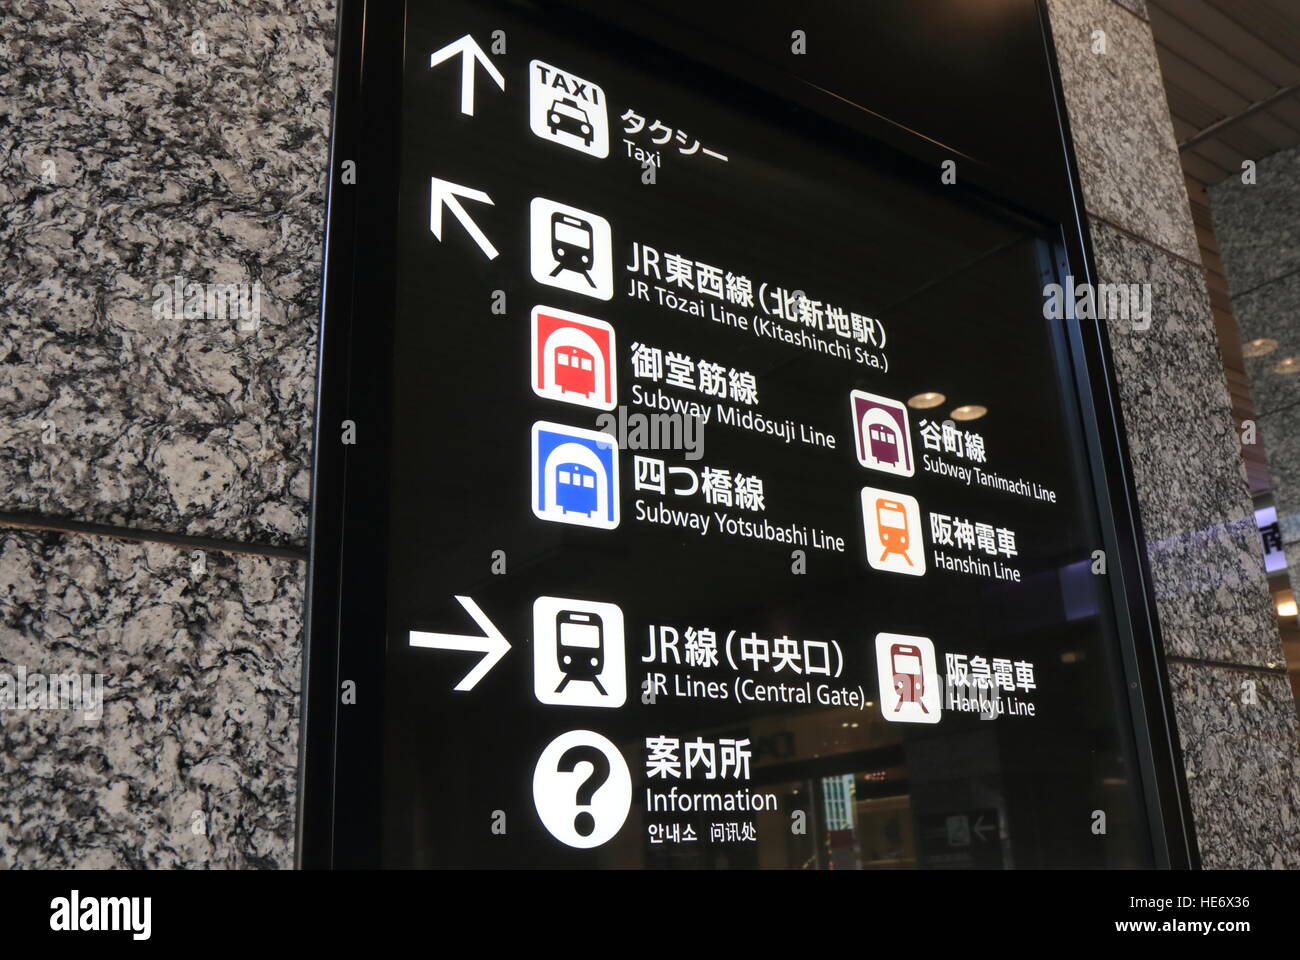 Vengono visualizzate le informazioni relative alla direzione per la stazione ferroviaria, dell' autobus e metropolitana presso la stazione di Osaka di Osaka in Giappone. Foto Stock